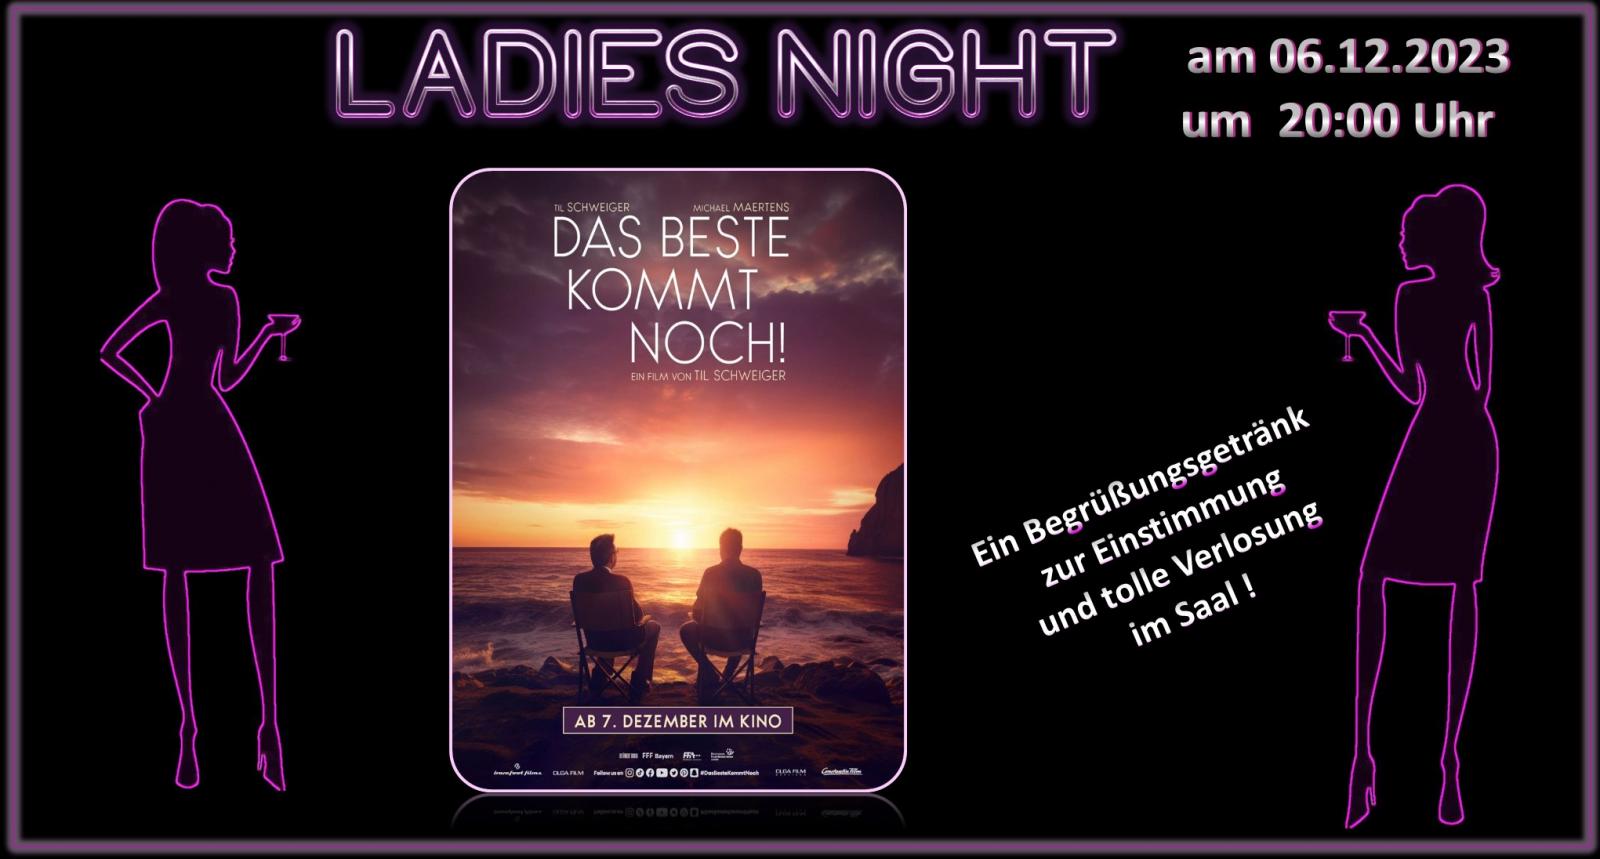 EXTRA-NIKOLAUS-EDITION- Ladies Night: am 06.12.23 um 20:00 Uhr!